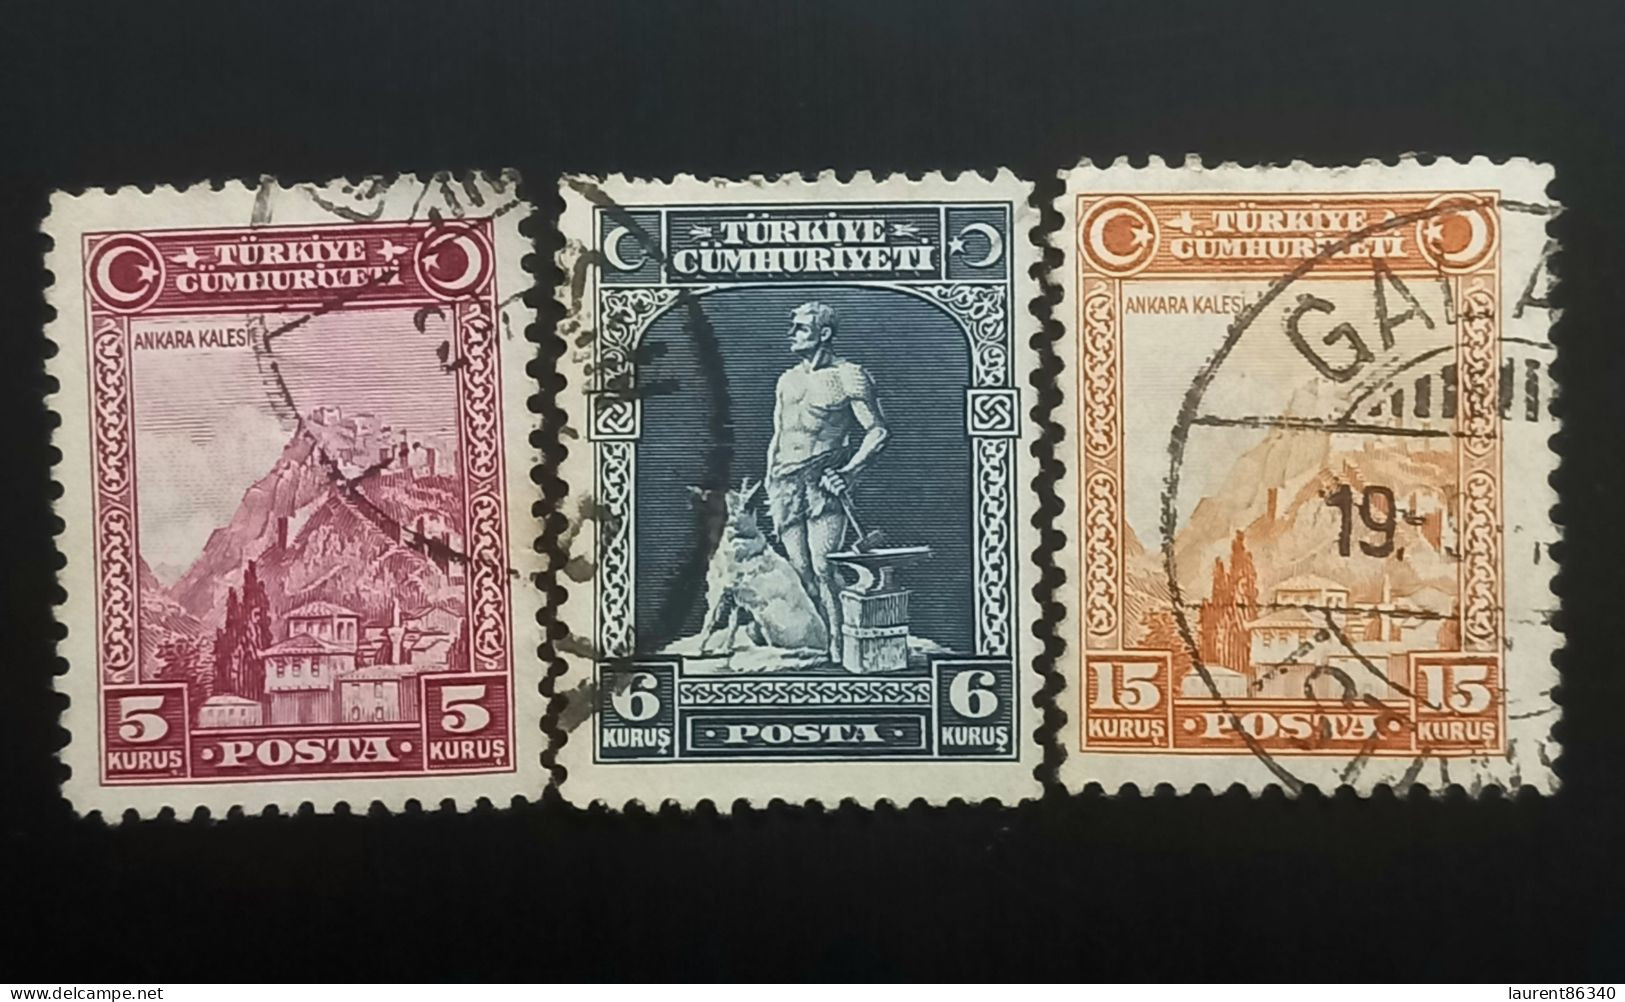 TURQUIE 1930 Inscription "TÜRKIYE CÜMHURIYETI" - "Ü" In "CÜMHURIYETI" 3 Used Stamps - Used Stamps